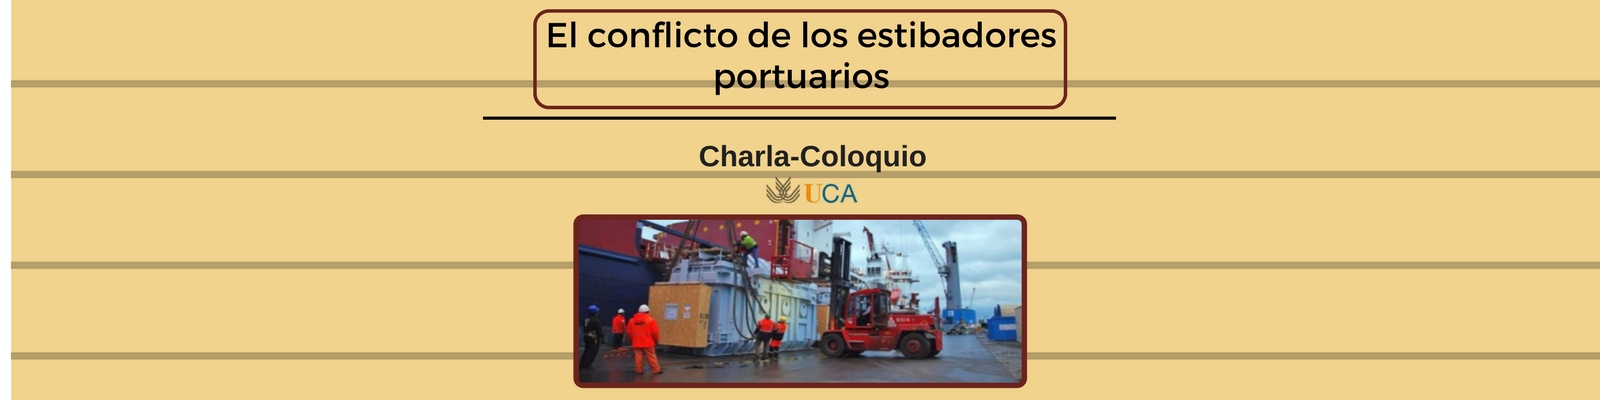 Charla-coloquio “El conflicto de los estibadores portuarios”